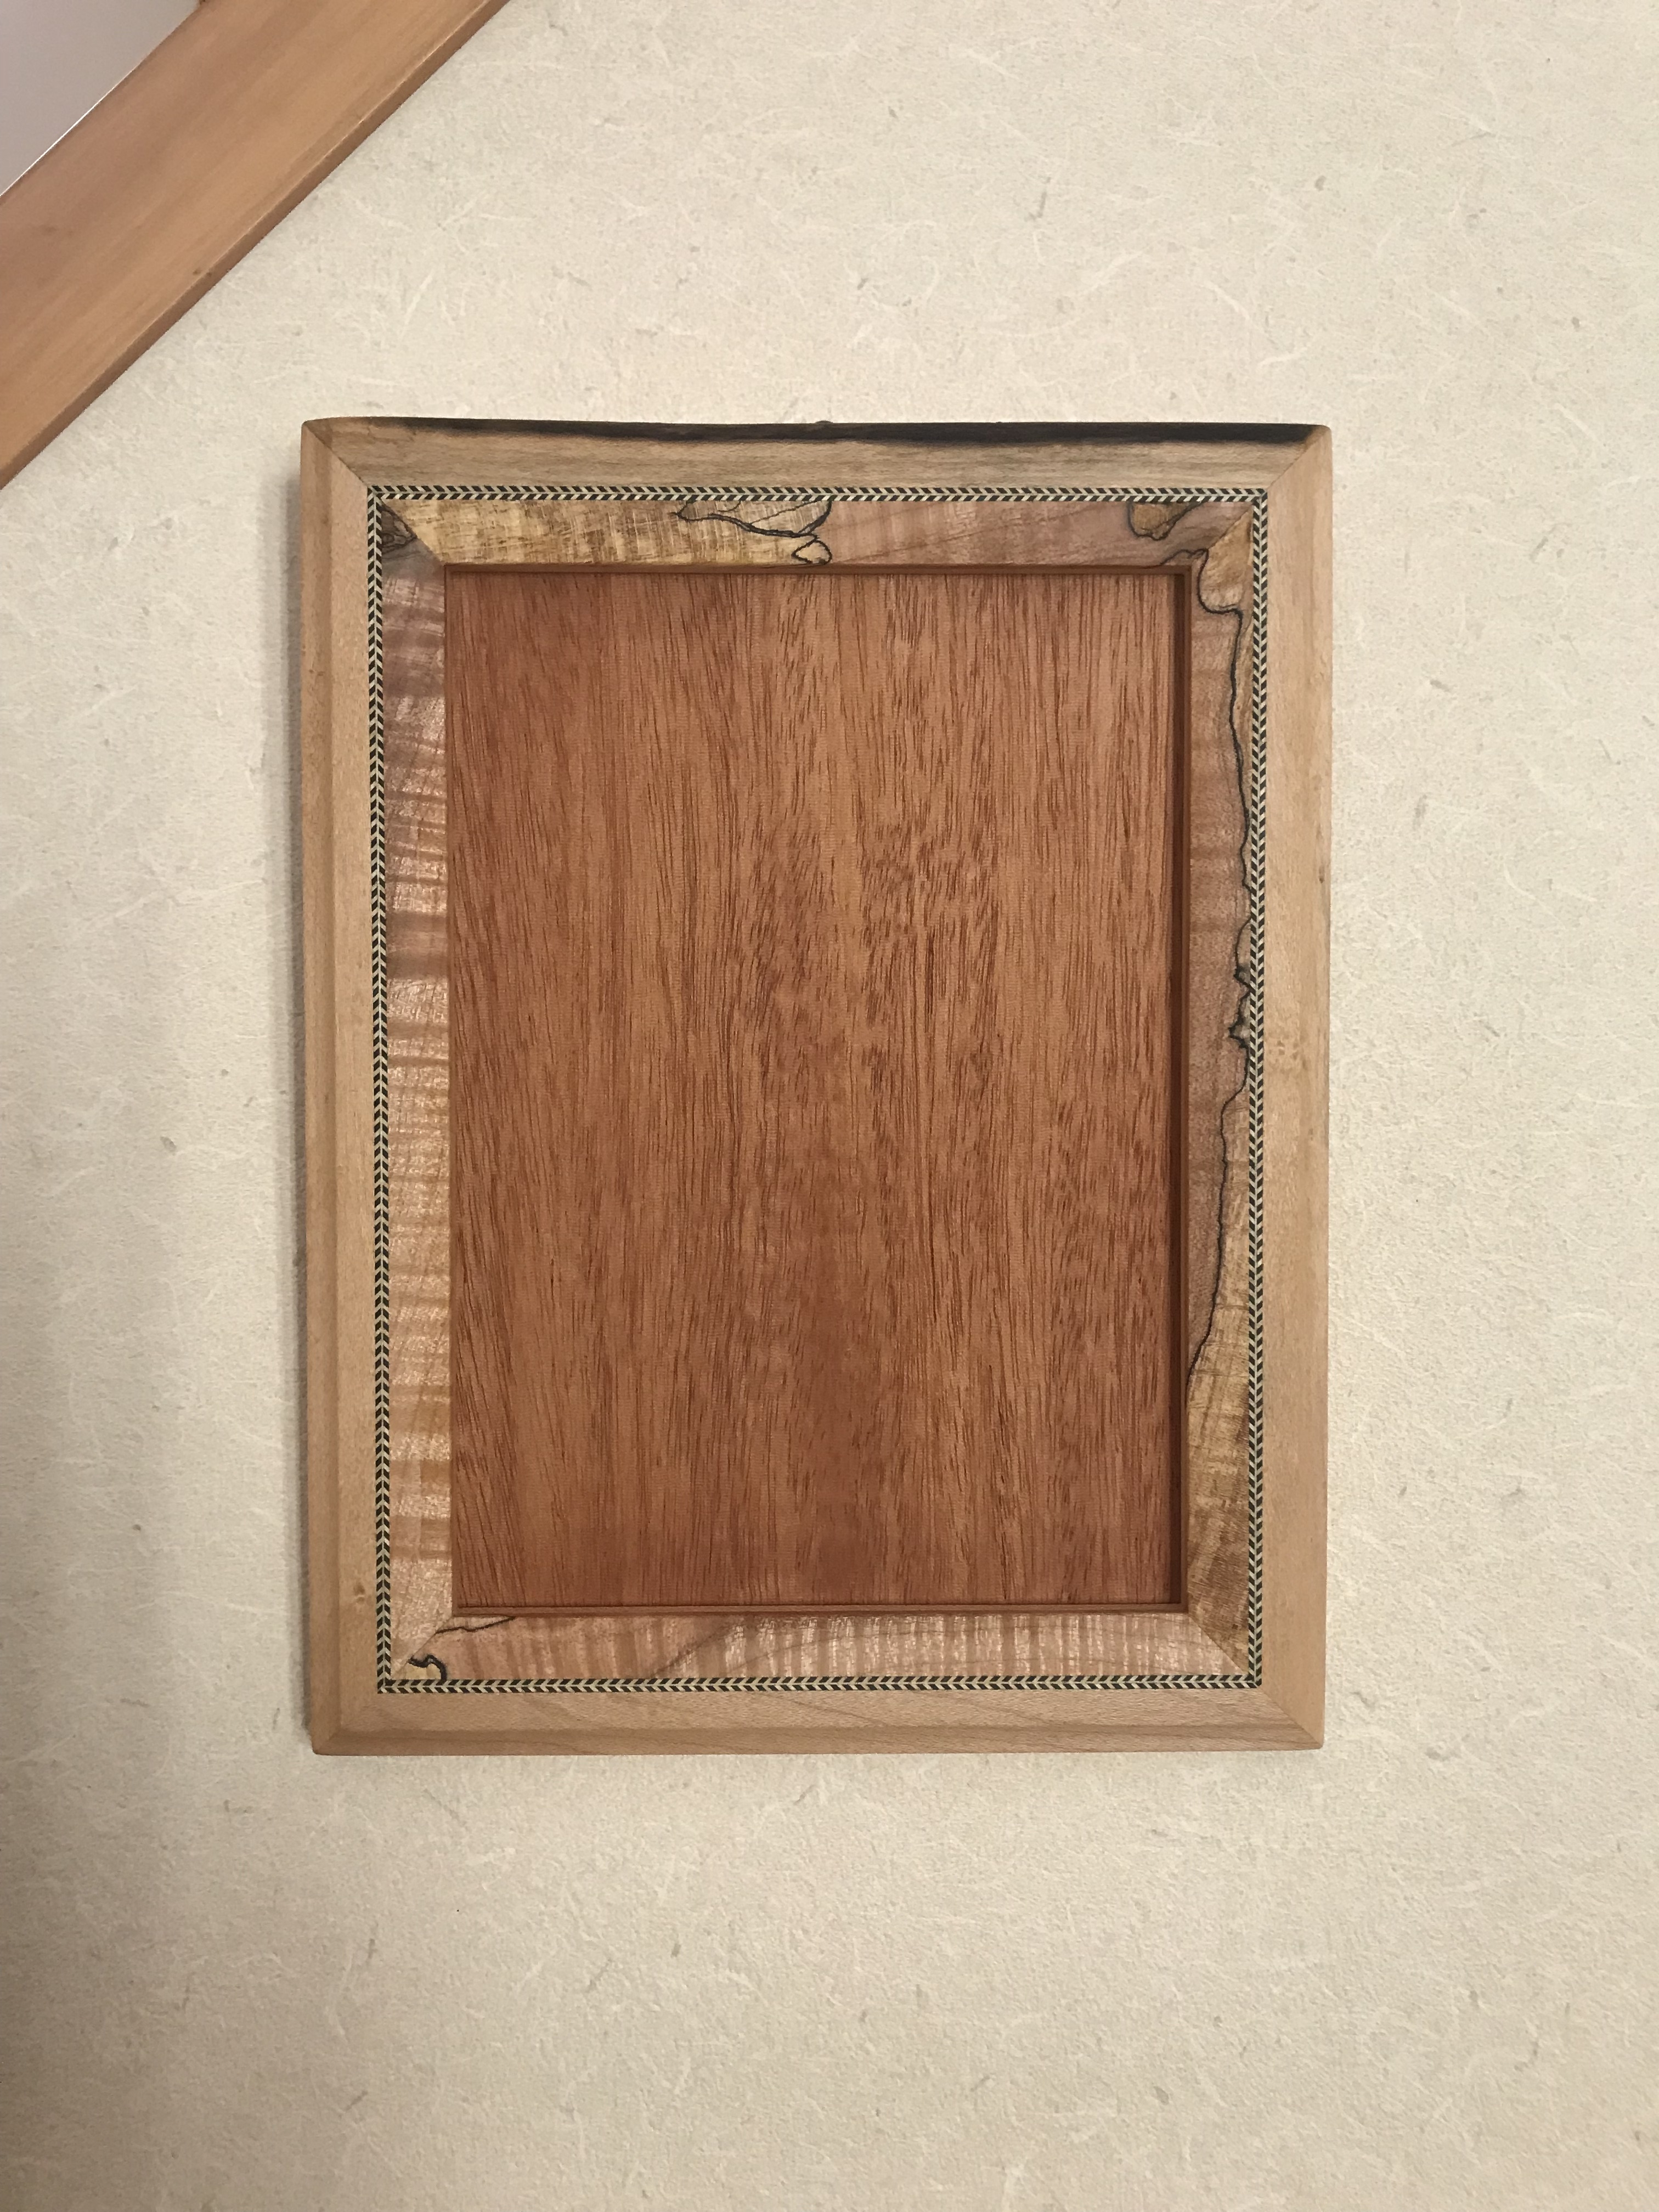 木製フォトフレーム 2l判 壁掛け用 木工品 1点もの 送料無料 Iichi ハンドメイド クラフト作品 手仕事品の通販